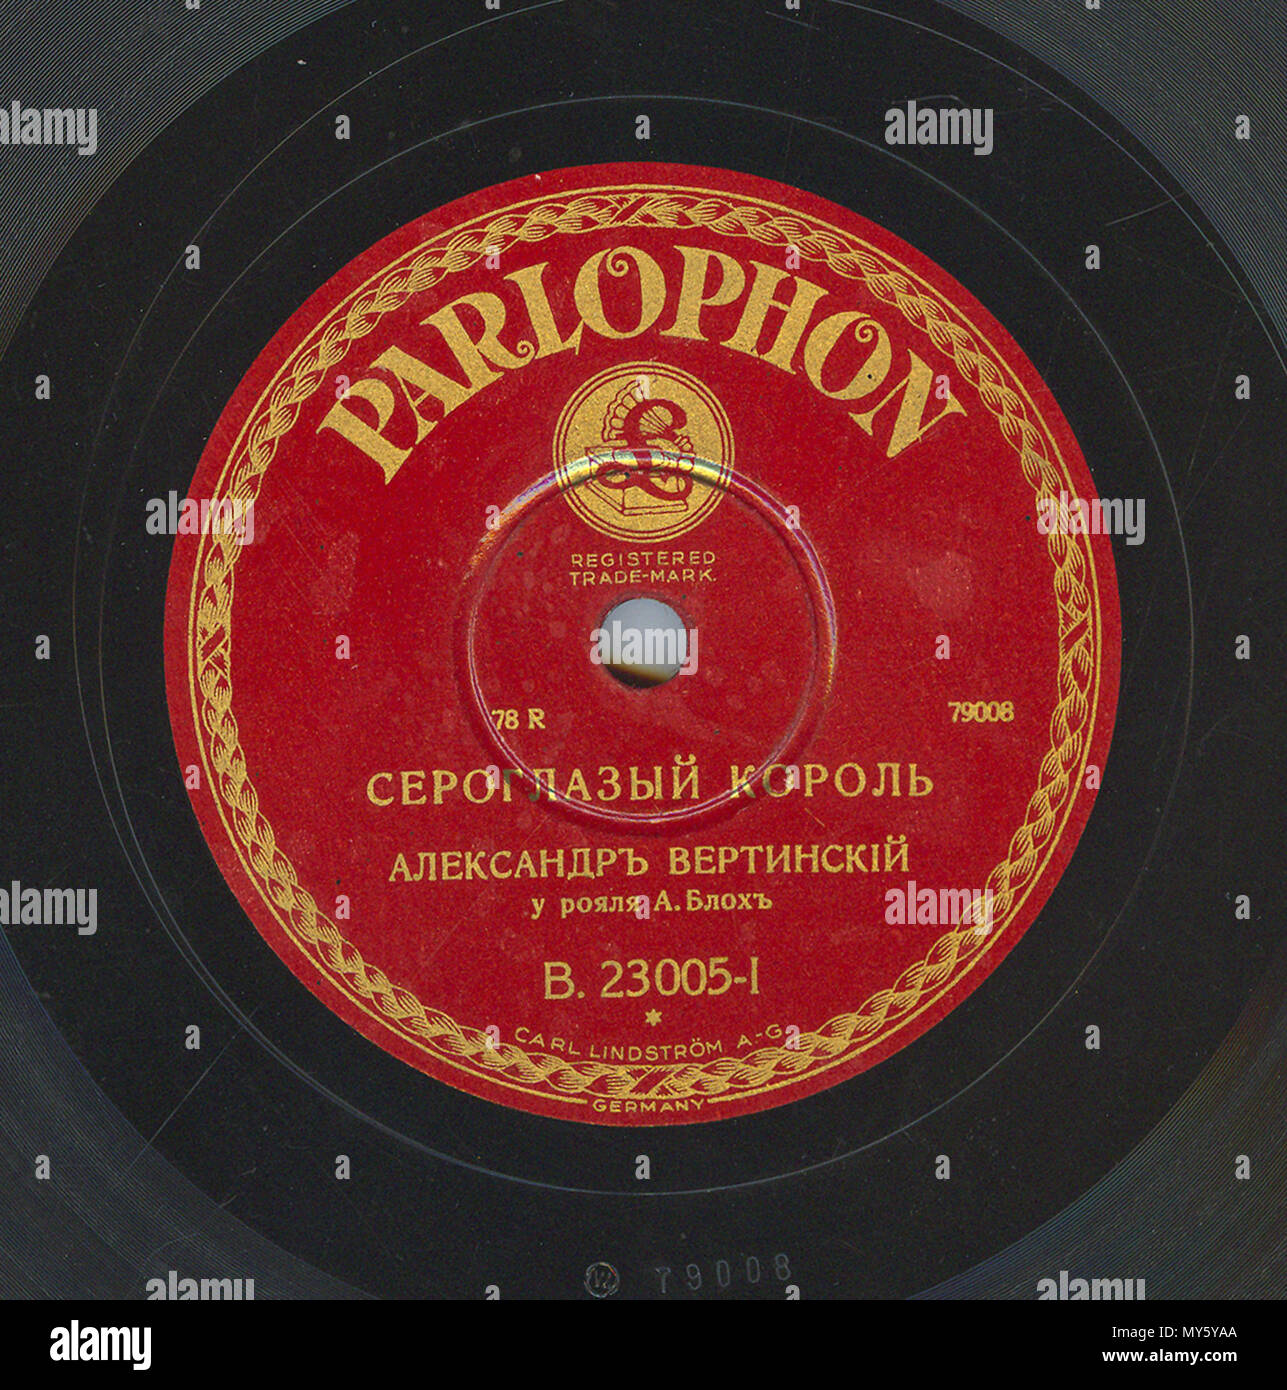 . Englisch: Vertinsky Parlophone B. 23005 01. 6. April 2010, 12:04:32. Parlophone 548 Vertinsky Parlophone B. 23005, 01. Stockfoto